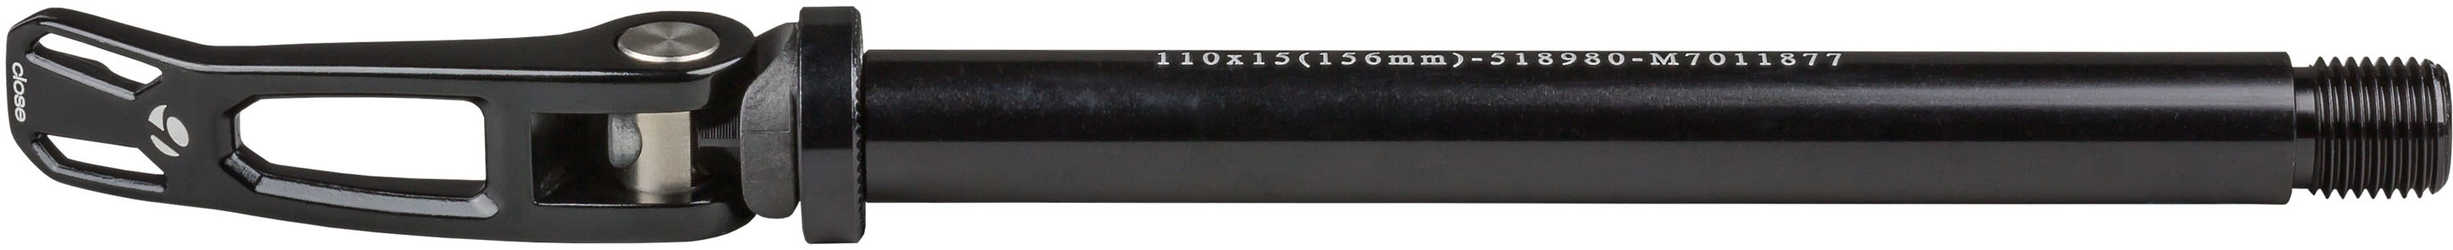 Stickaxel Bontrager Abp Convert Maxle Boost 15 x 110 mm fram från Bontrager